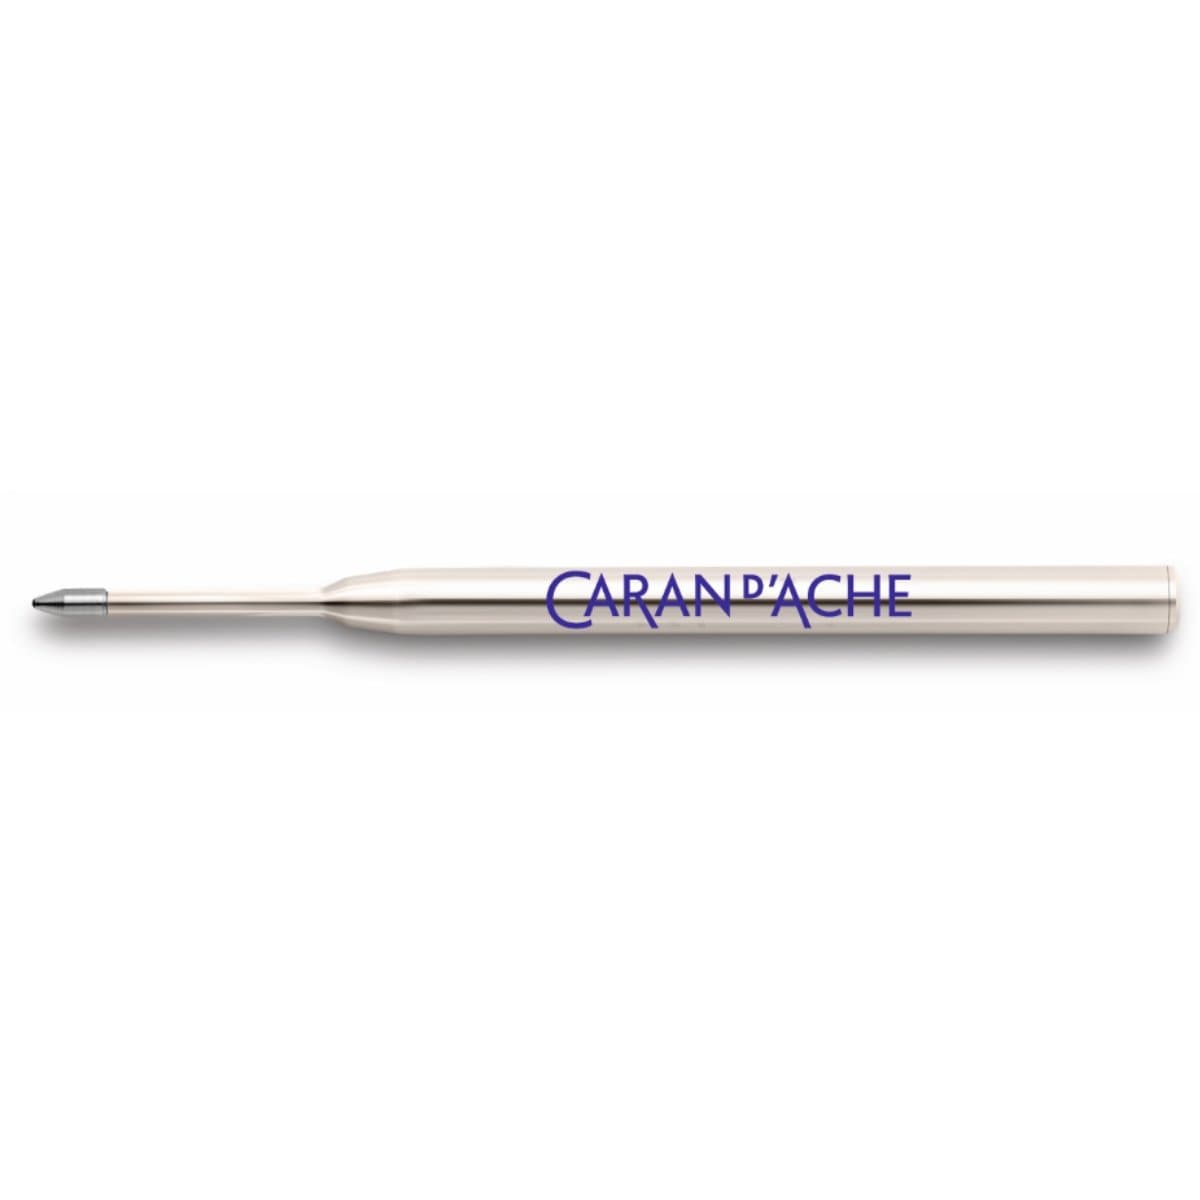 CARAN d'ACHE Goliath Ballpoint Pen Refill Cartridge, Medium 0.25mm, Blue